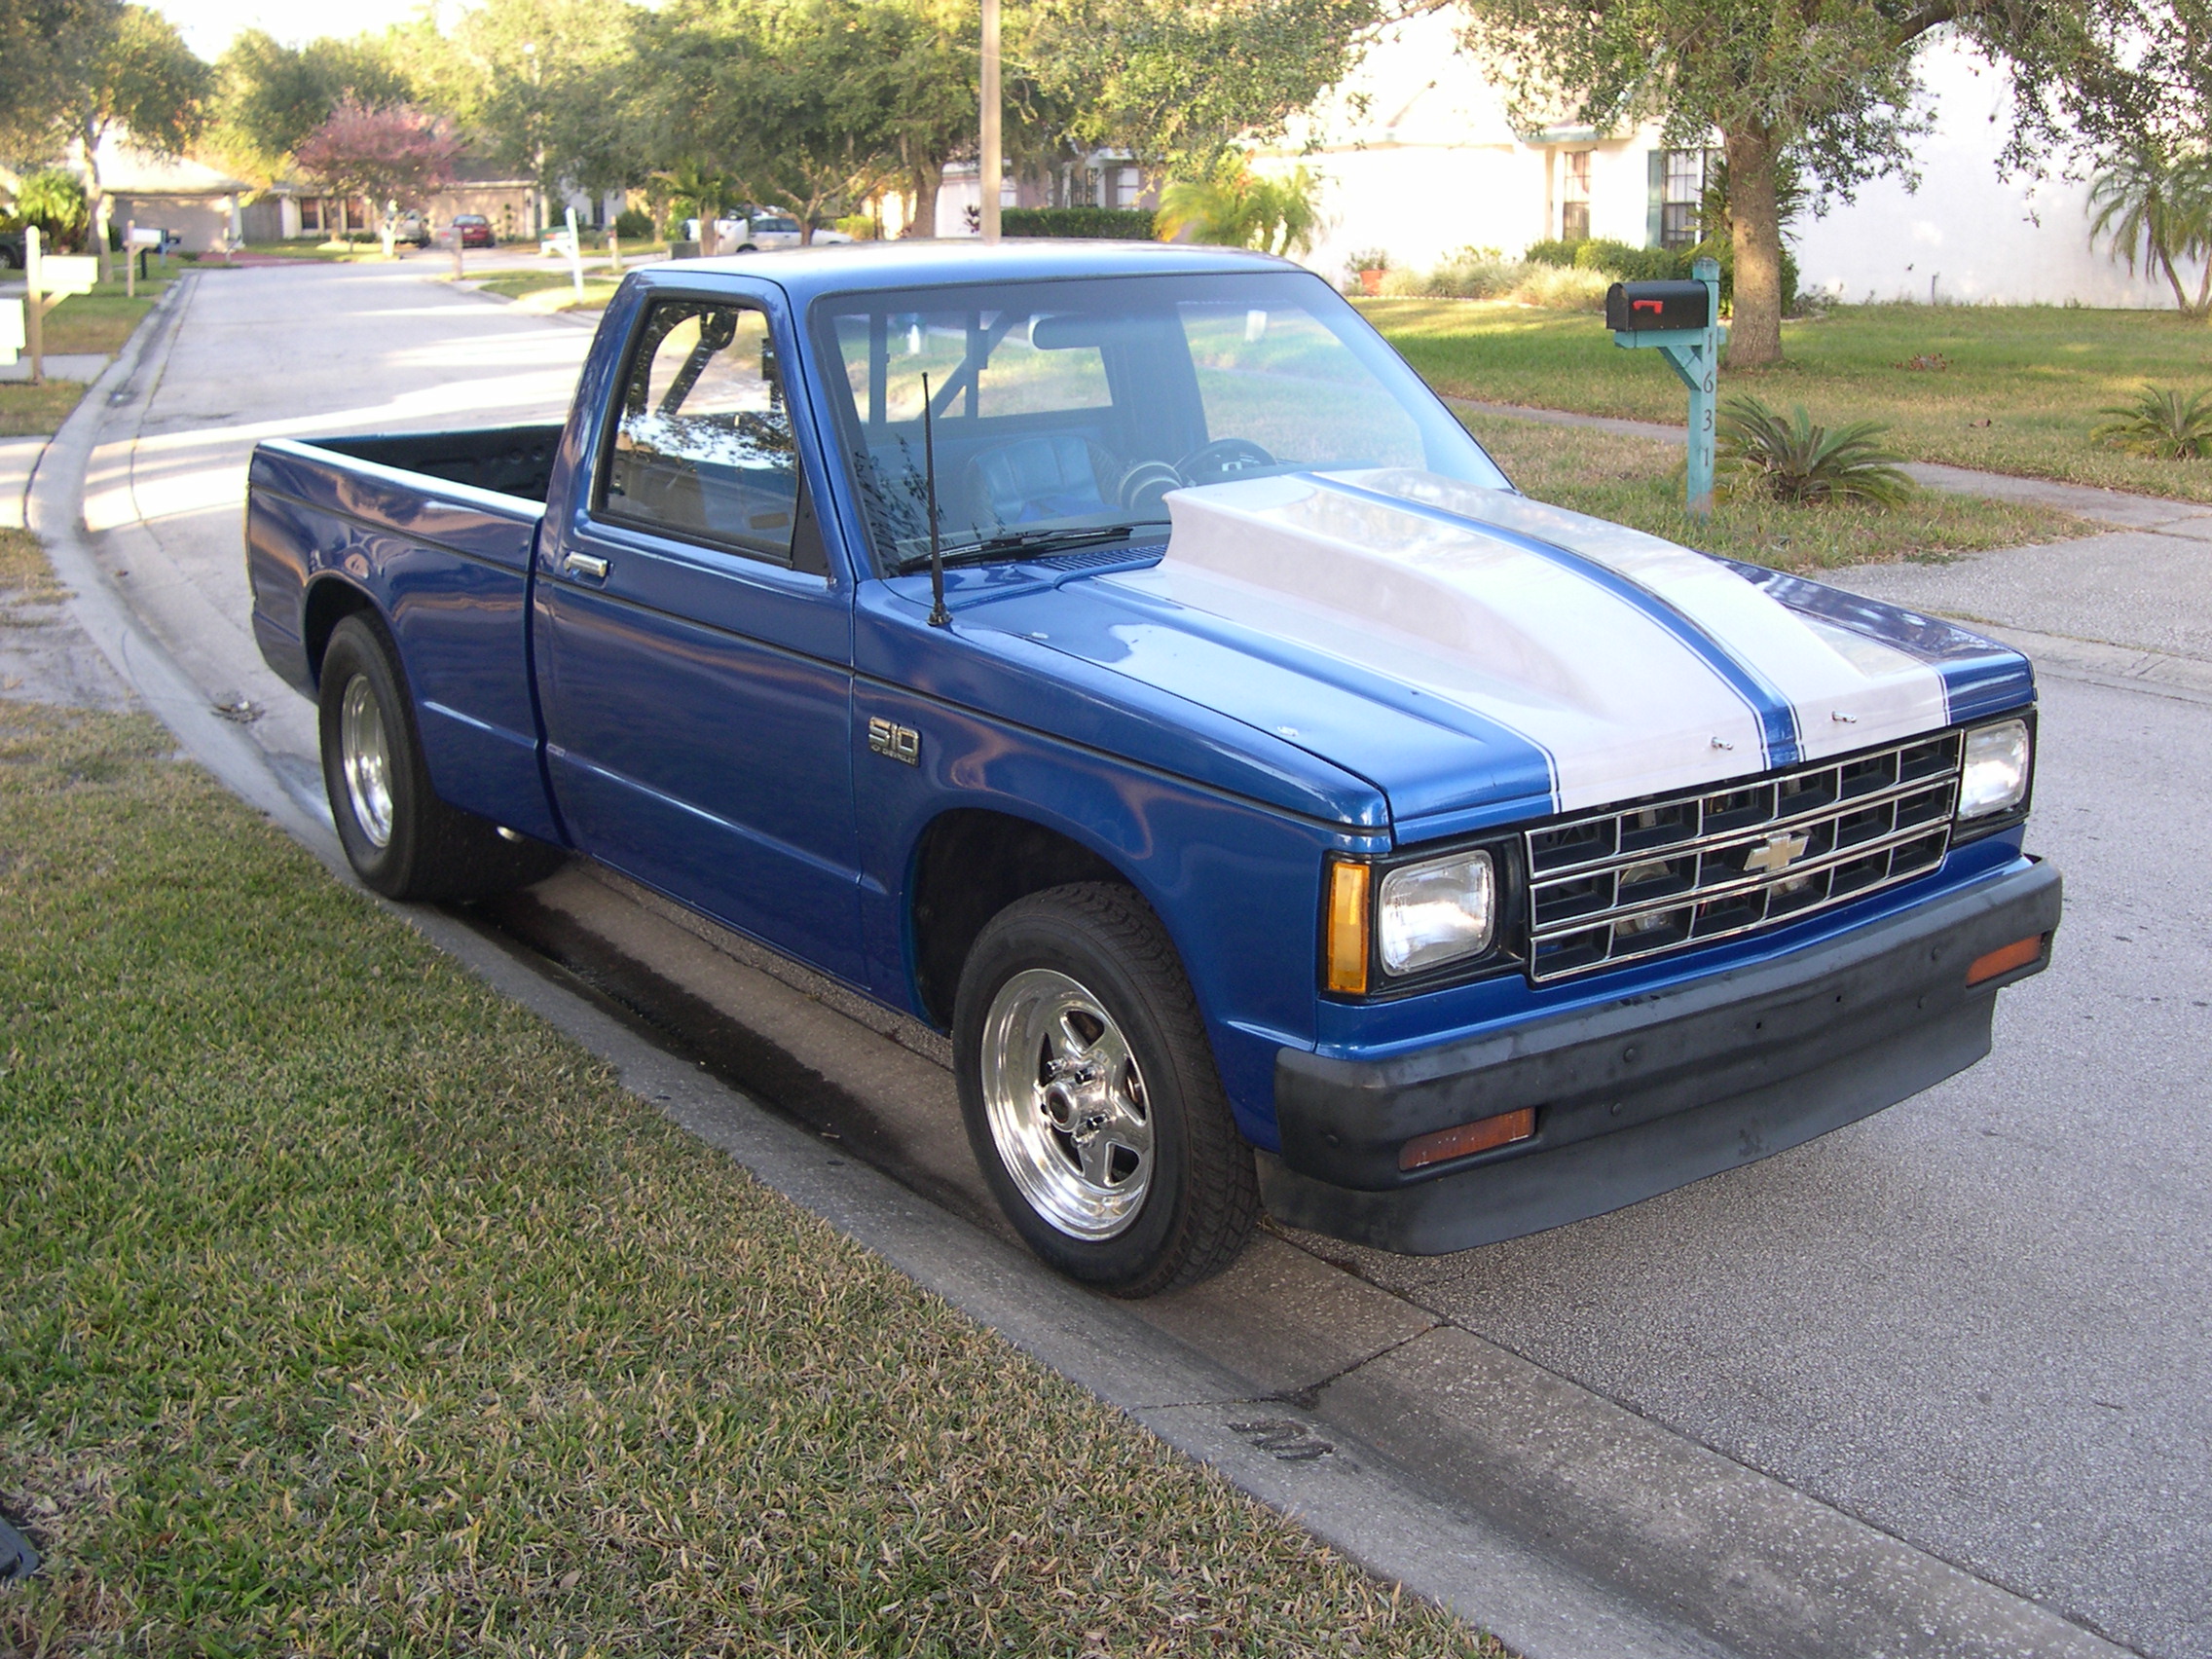  1988 Chevrolet S10 Pickup 